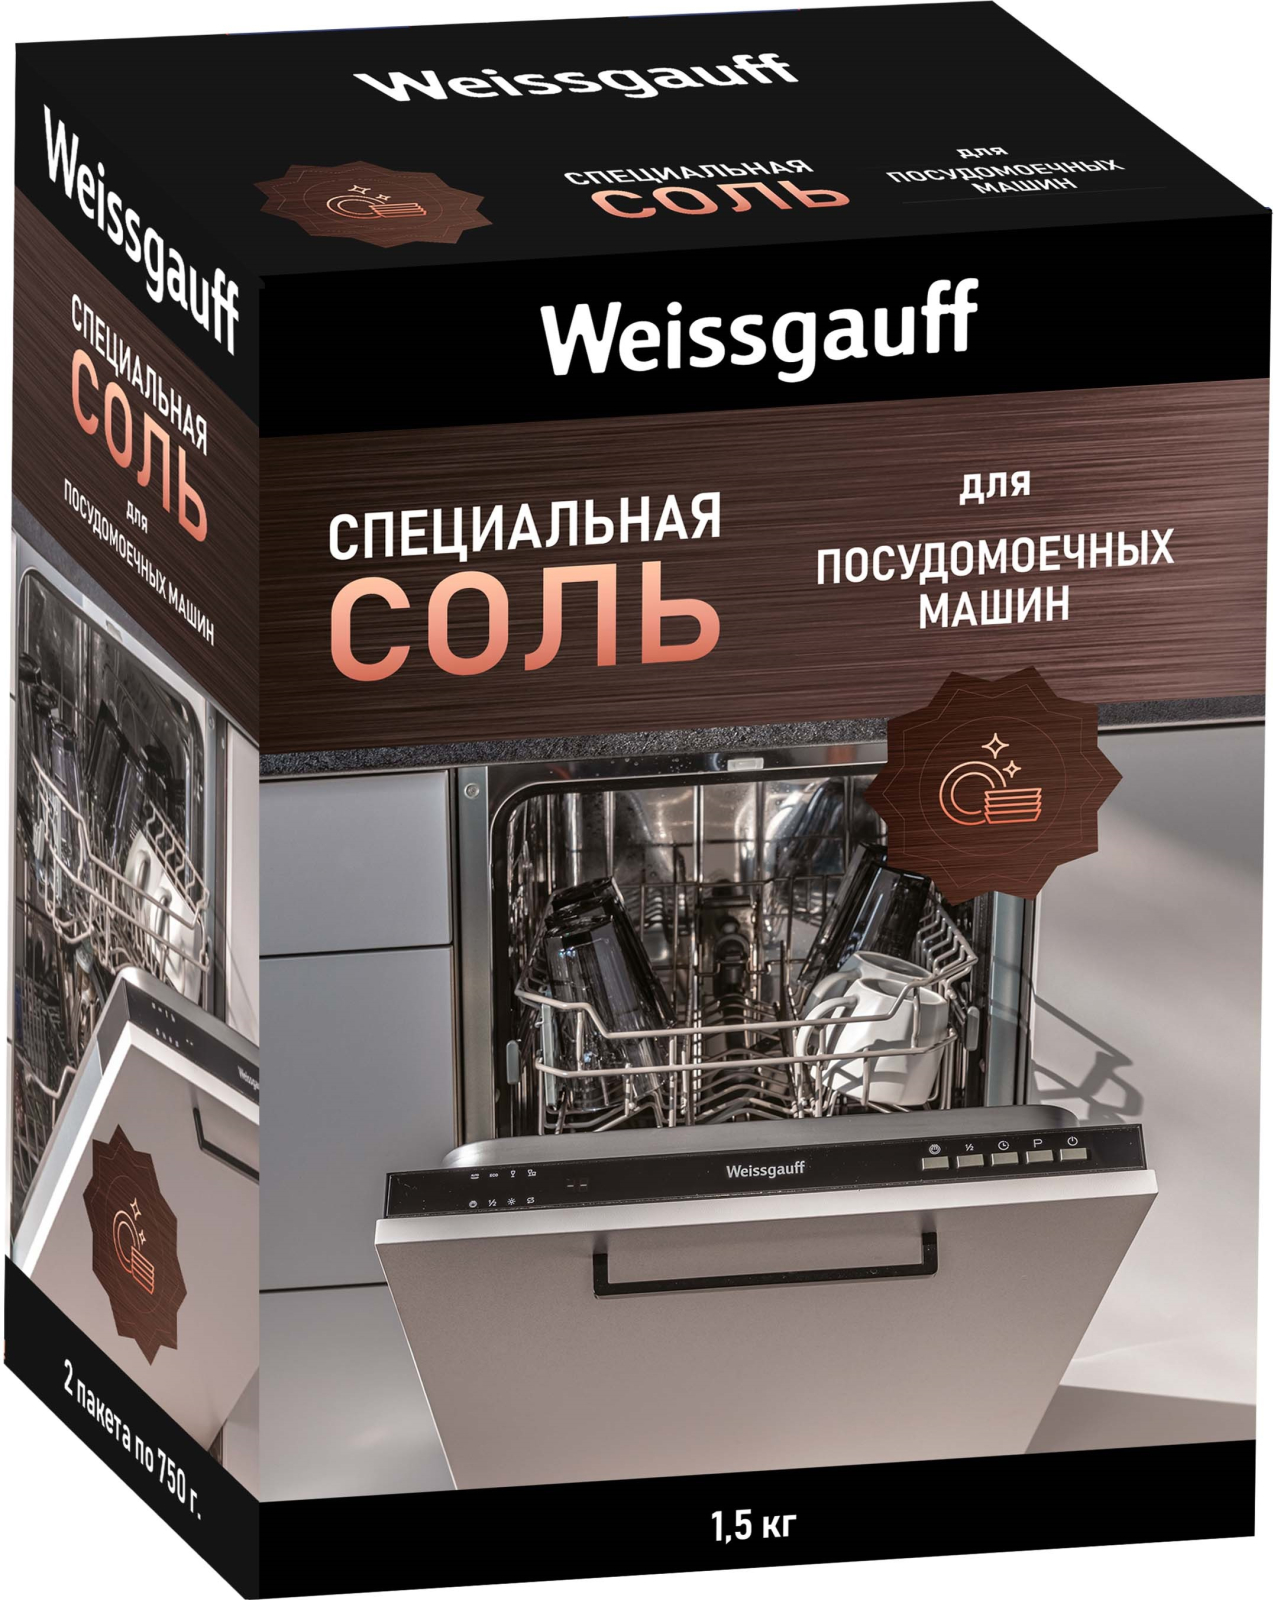 Соль Weissgauff для посудомоечных машин